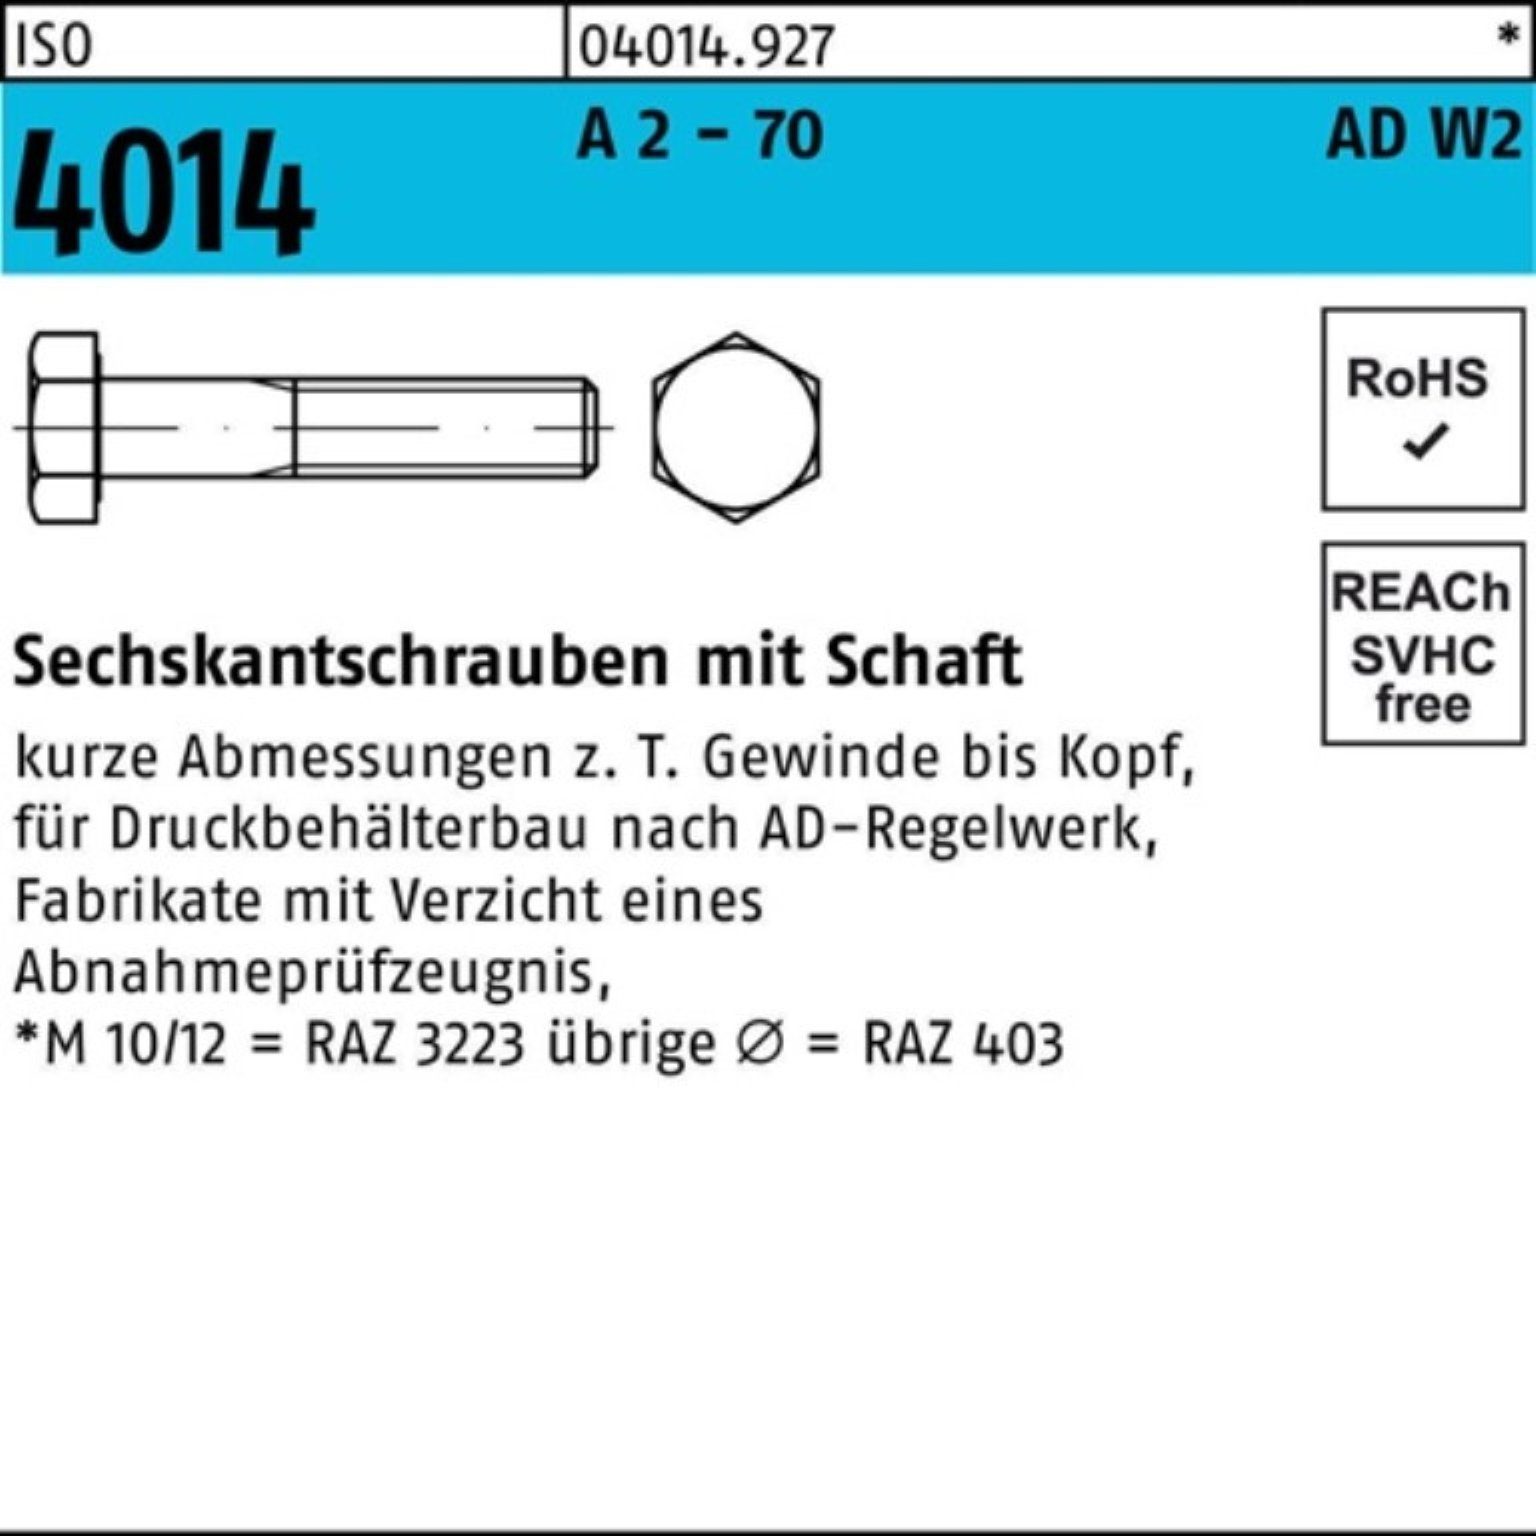 Bufab Sechskantschraube 100er Pack Sechskantschraube 70 50 ISO M12x 2 4014 AD-W2 Schaft 55 A 